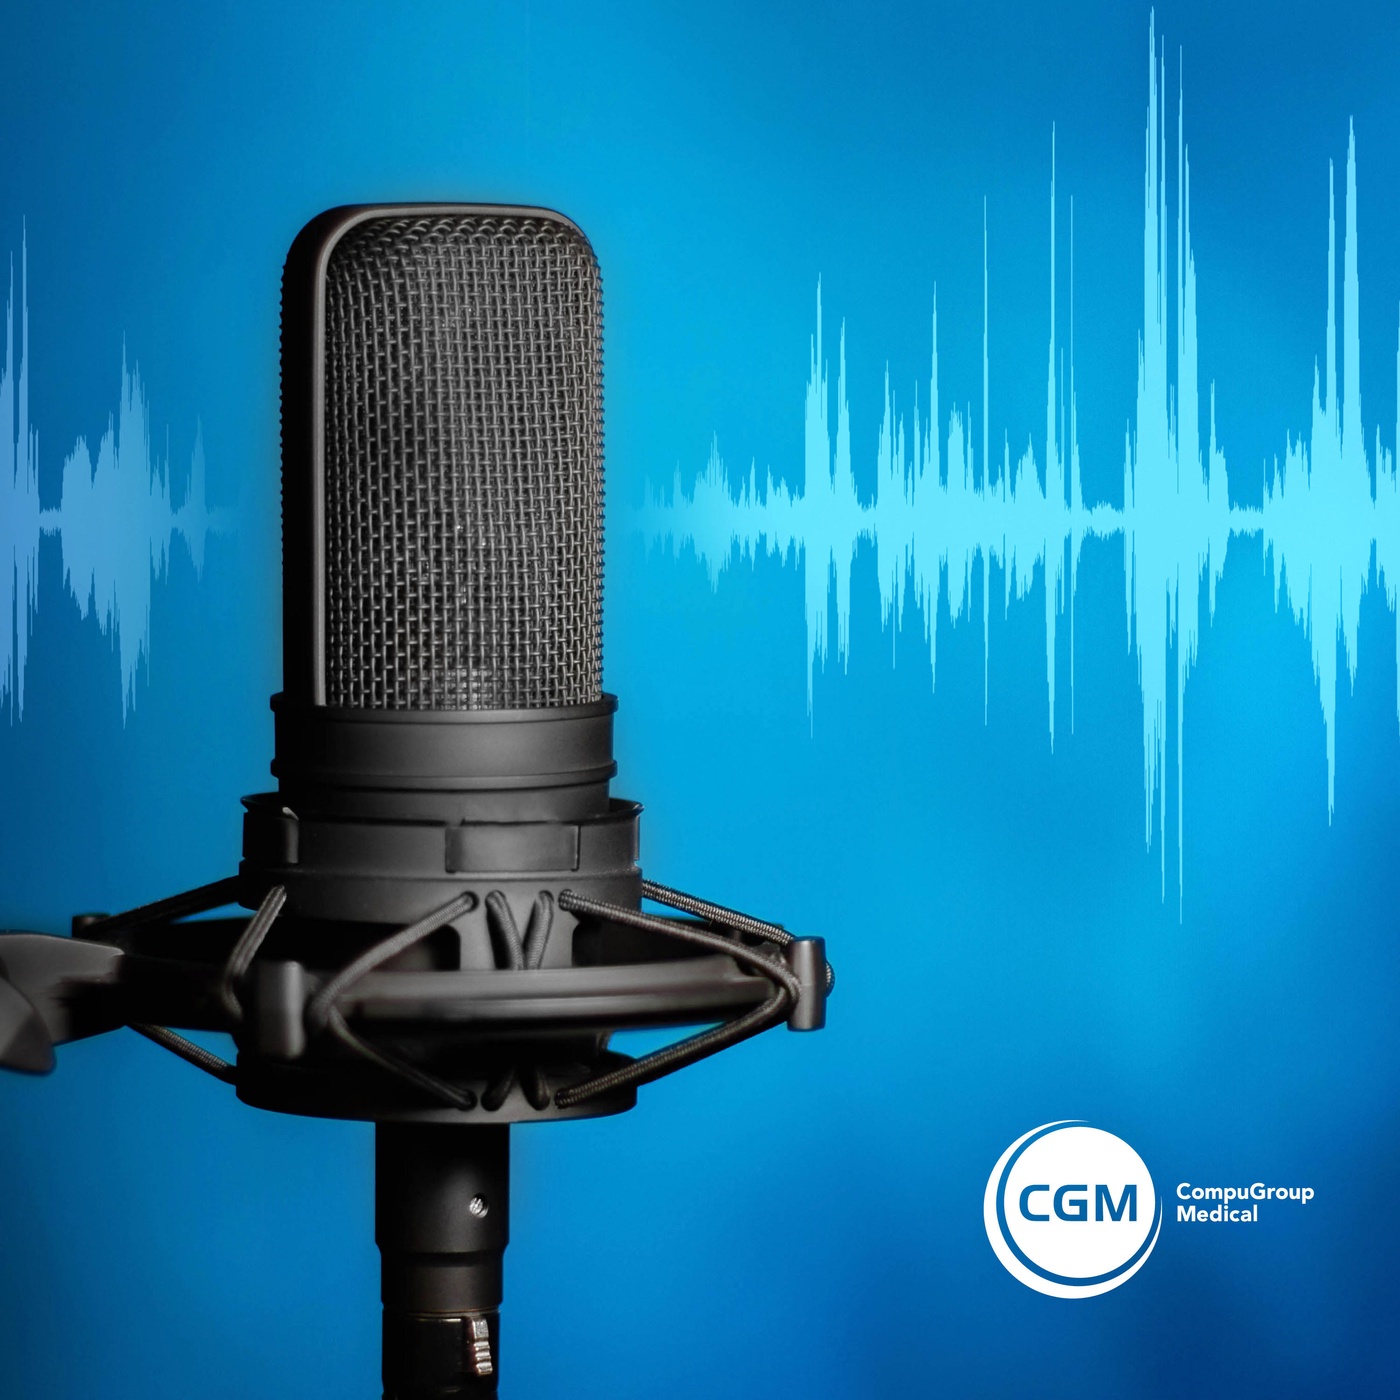 E-Health fürs Ohr - Der CGM Podcast für Gesundheitsprofis